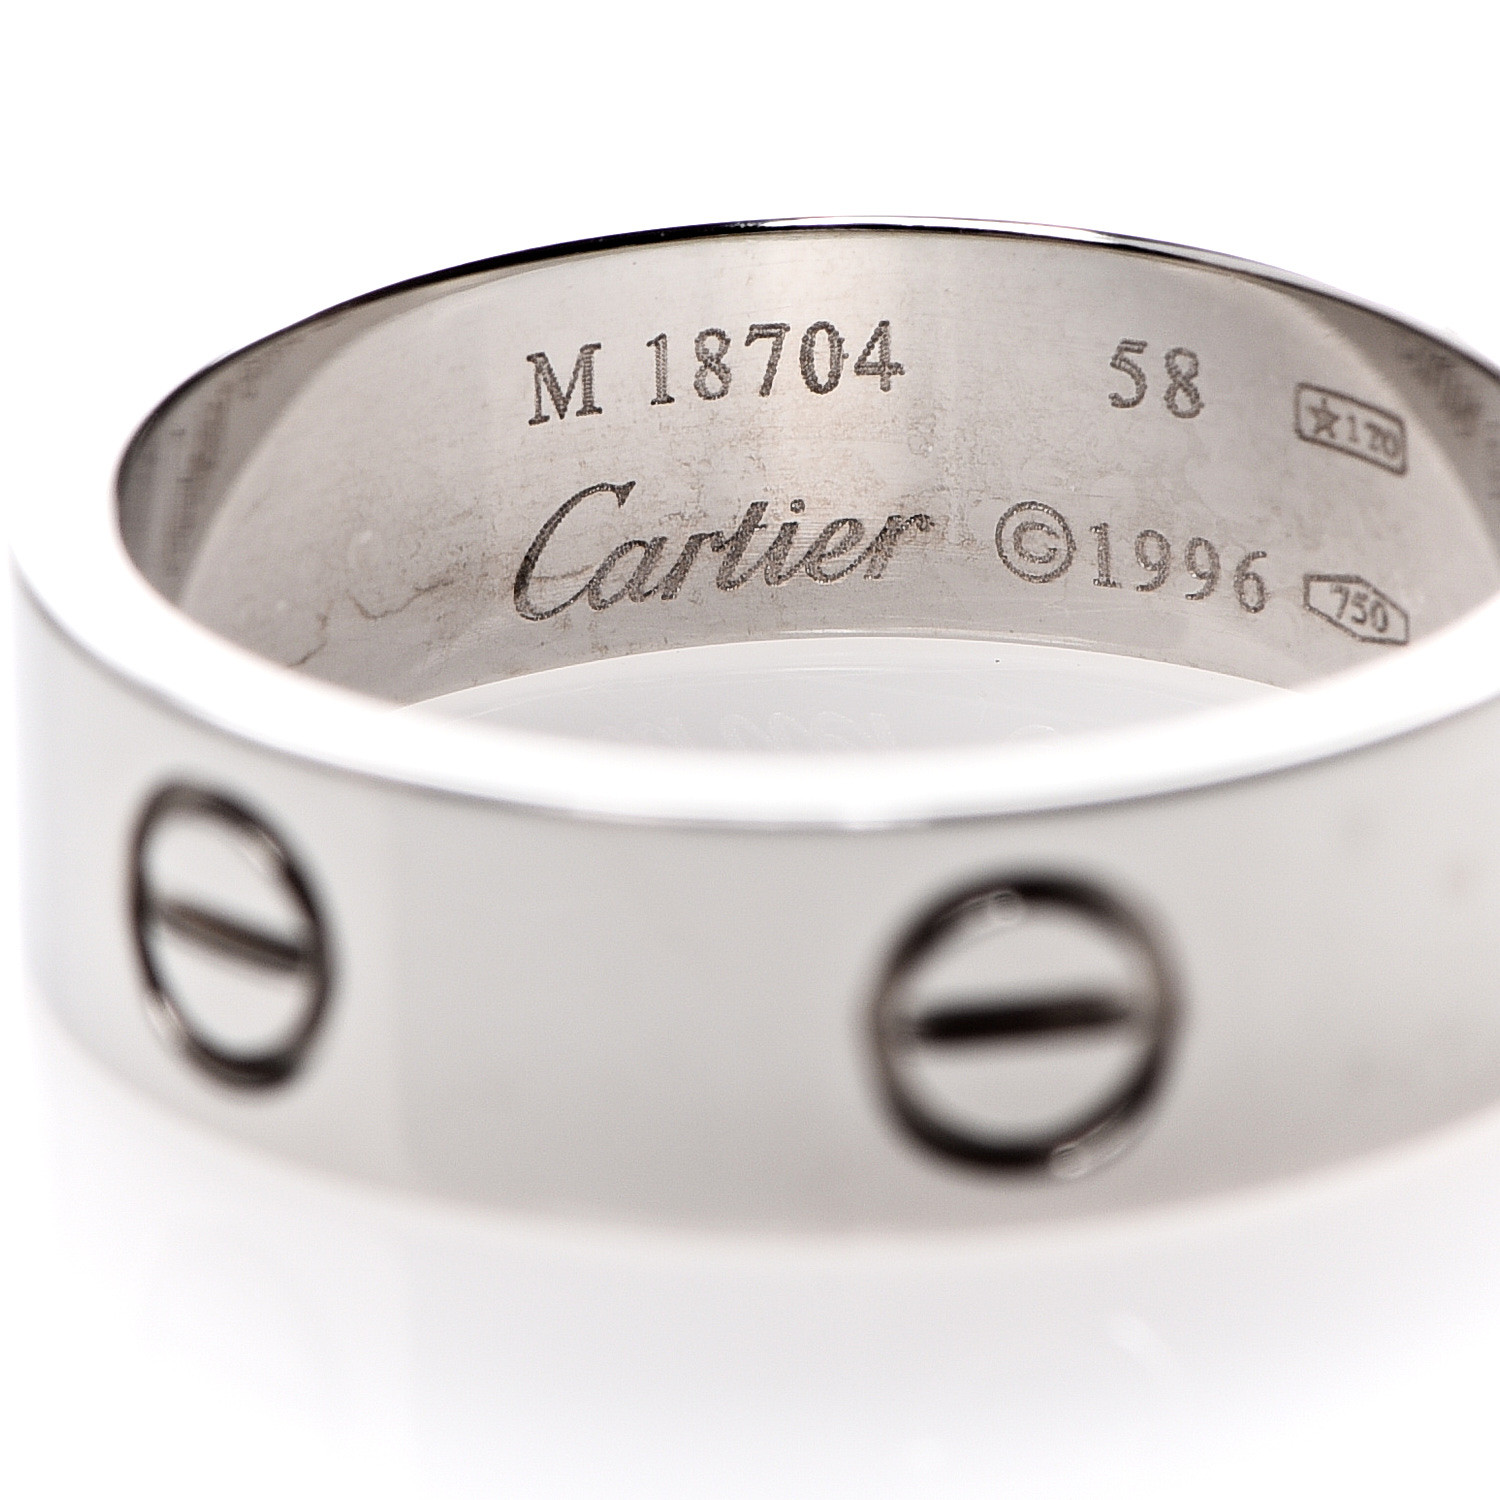 CARTIER 18K White Gold 5.5mm LOVE Ring 58 8.25 532133